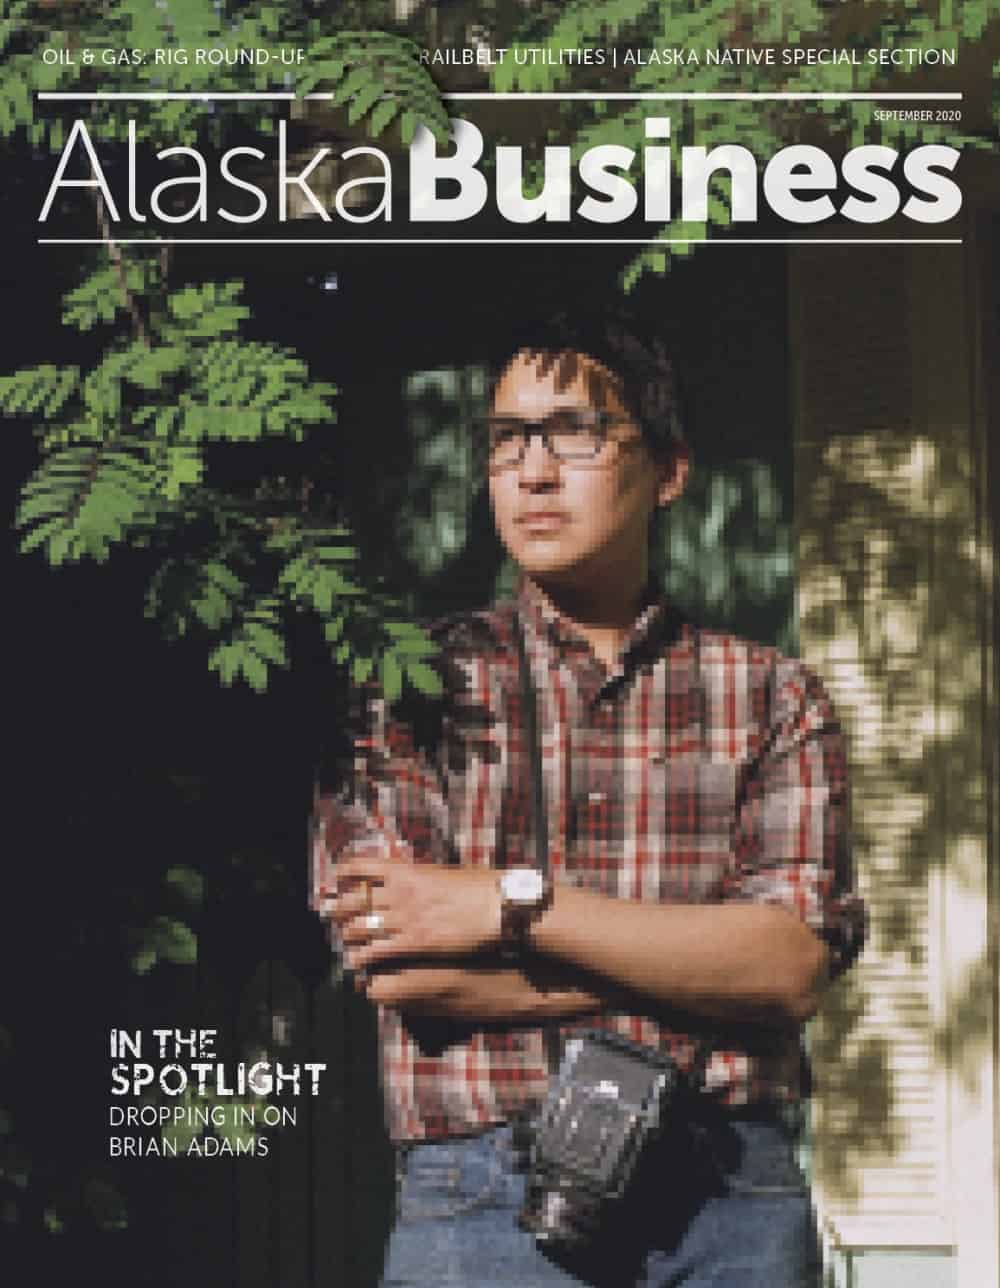 Alaska Business Magazine September 2020 cover